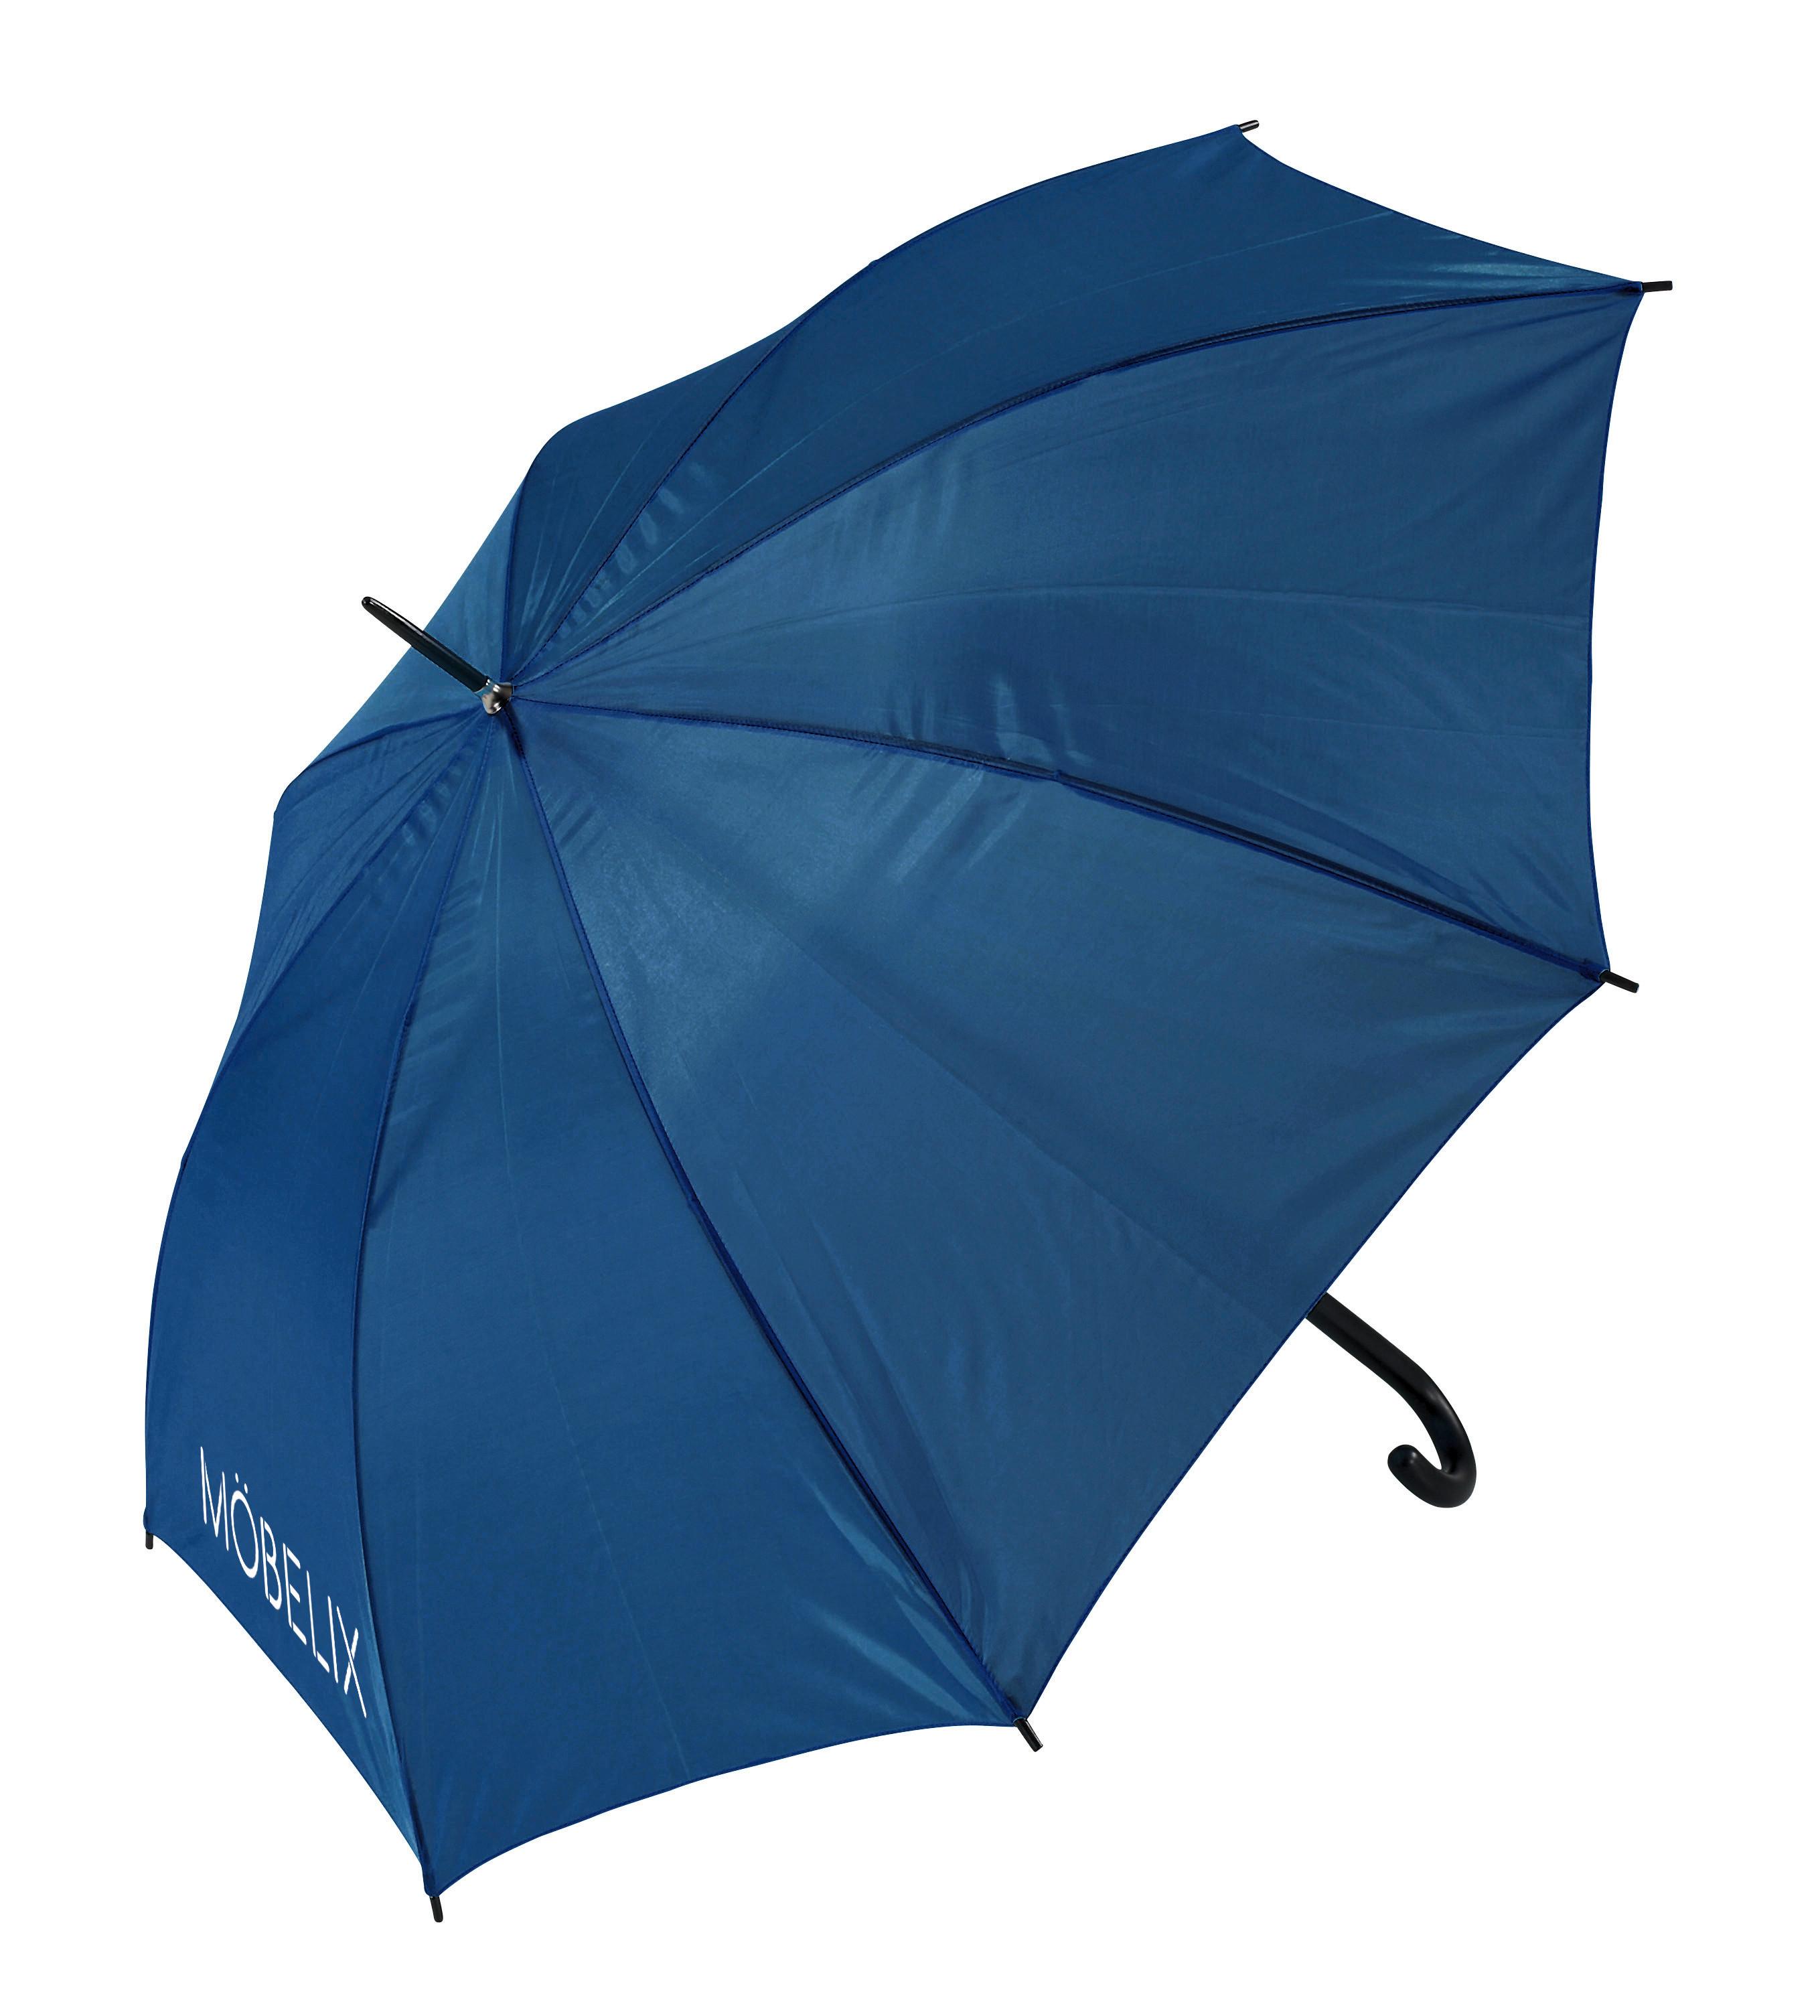 Regenschirm "daniel" - KONVENTIONELL, Kunststoff (103cm)